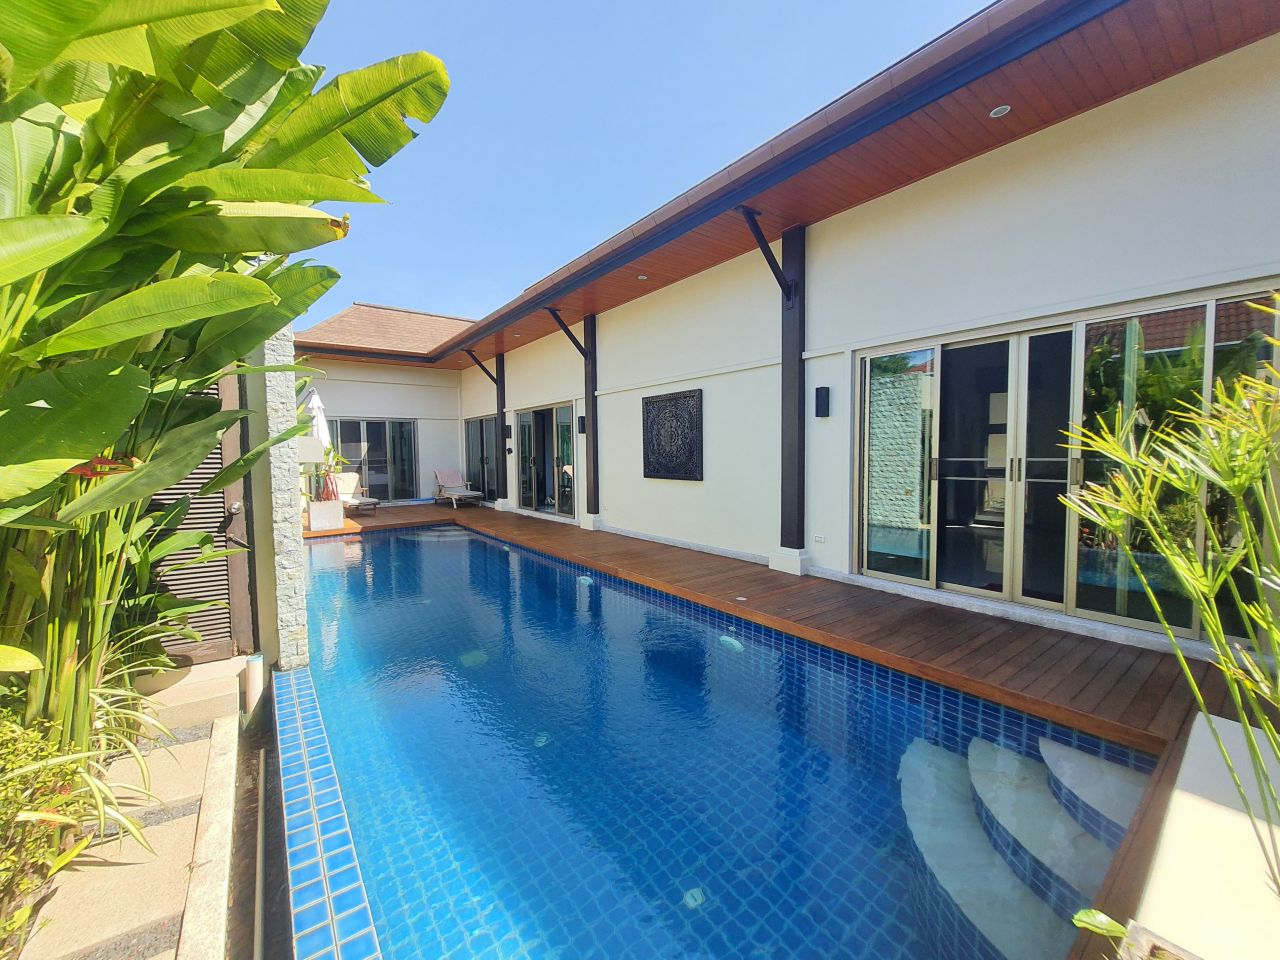 Villa in Nai Harn, Thailand, 211 m2 - Foto 1